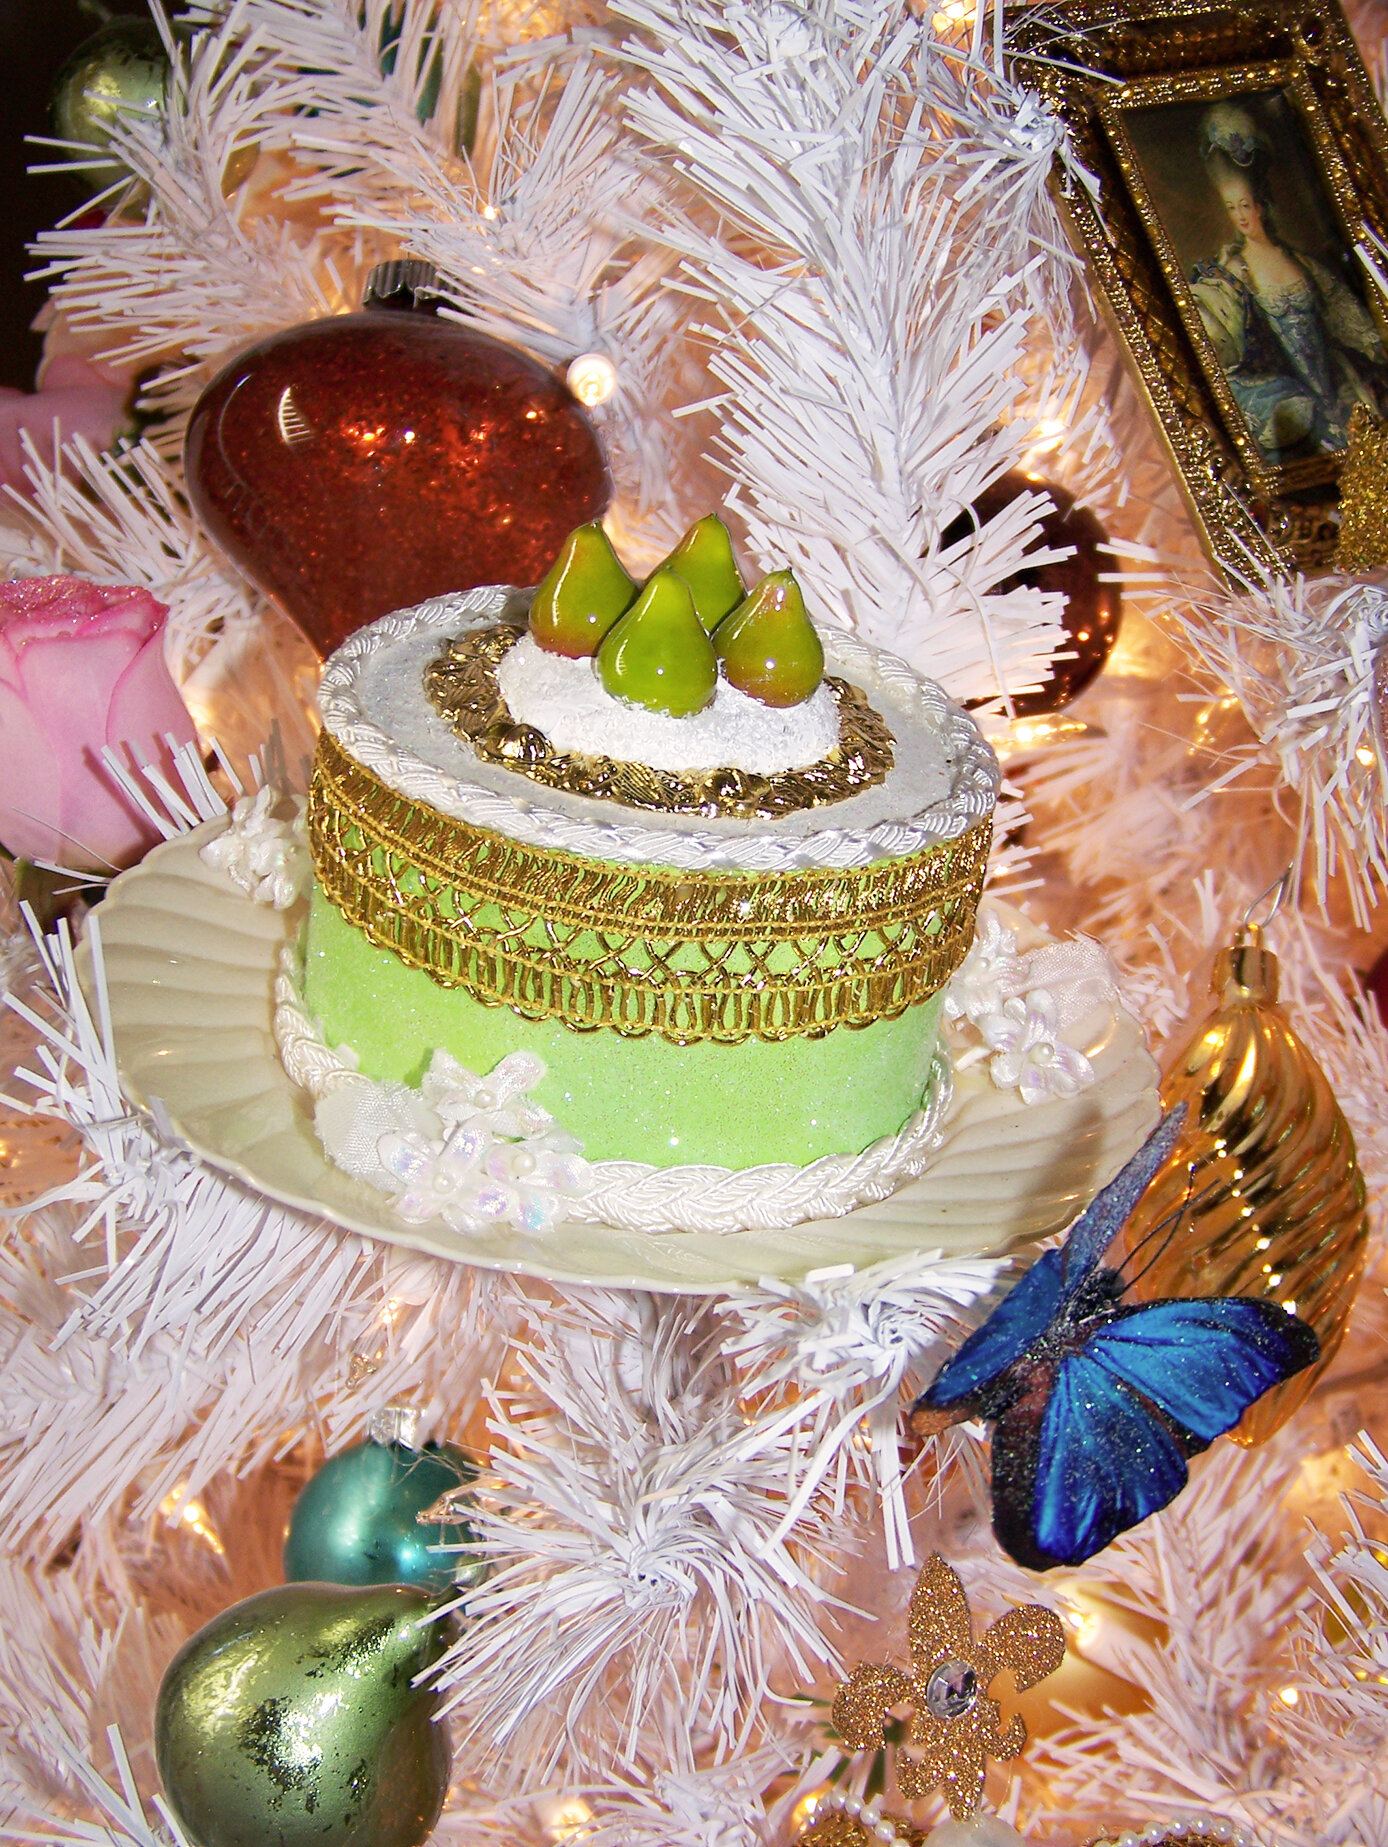  Marie Antoinette cake ornament 